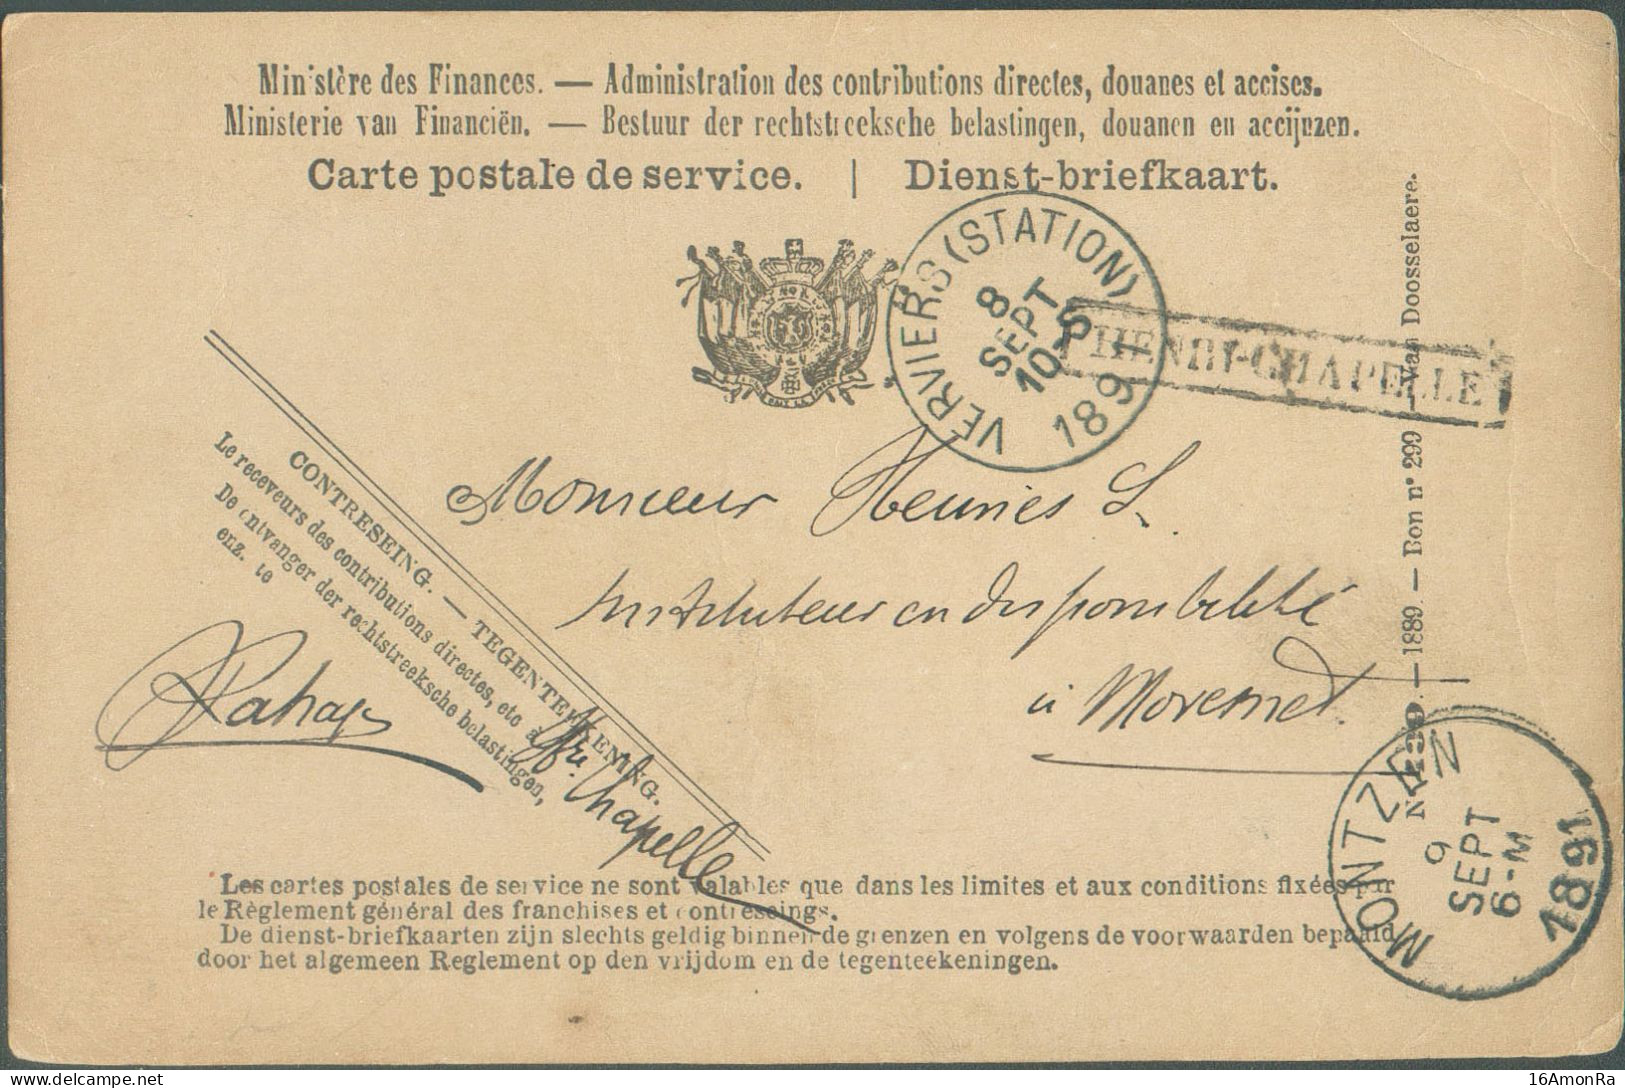 C.P. De Service Obl. Sc VERVIERS (STATION) 8 Sept. 1891 + Griffe HENRI-CHAPELLE Vers MONTZEN (9/9)   22185bis  Cantons D - Sello Lineal